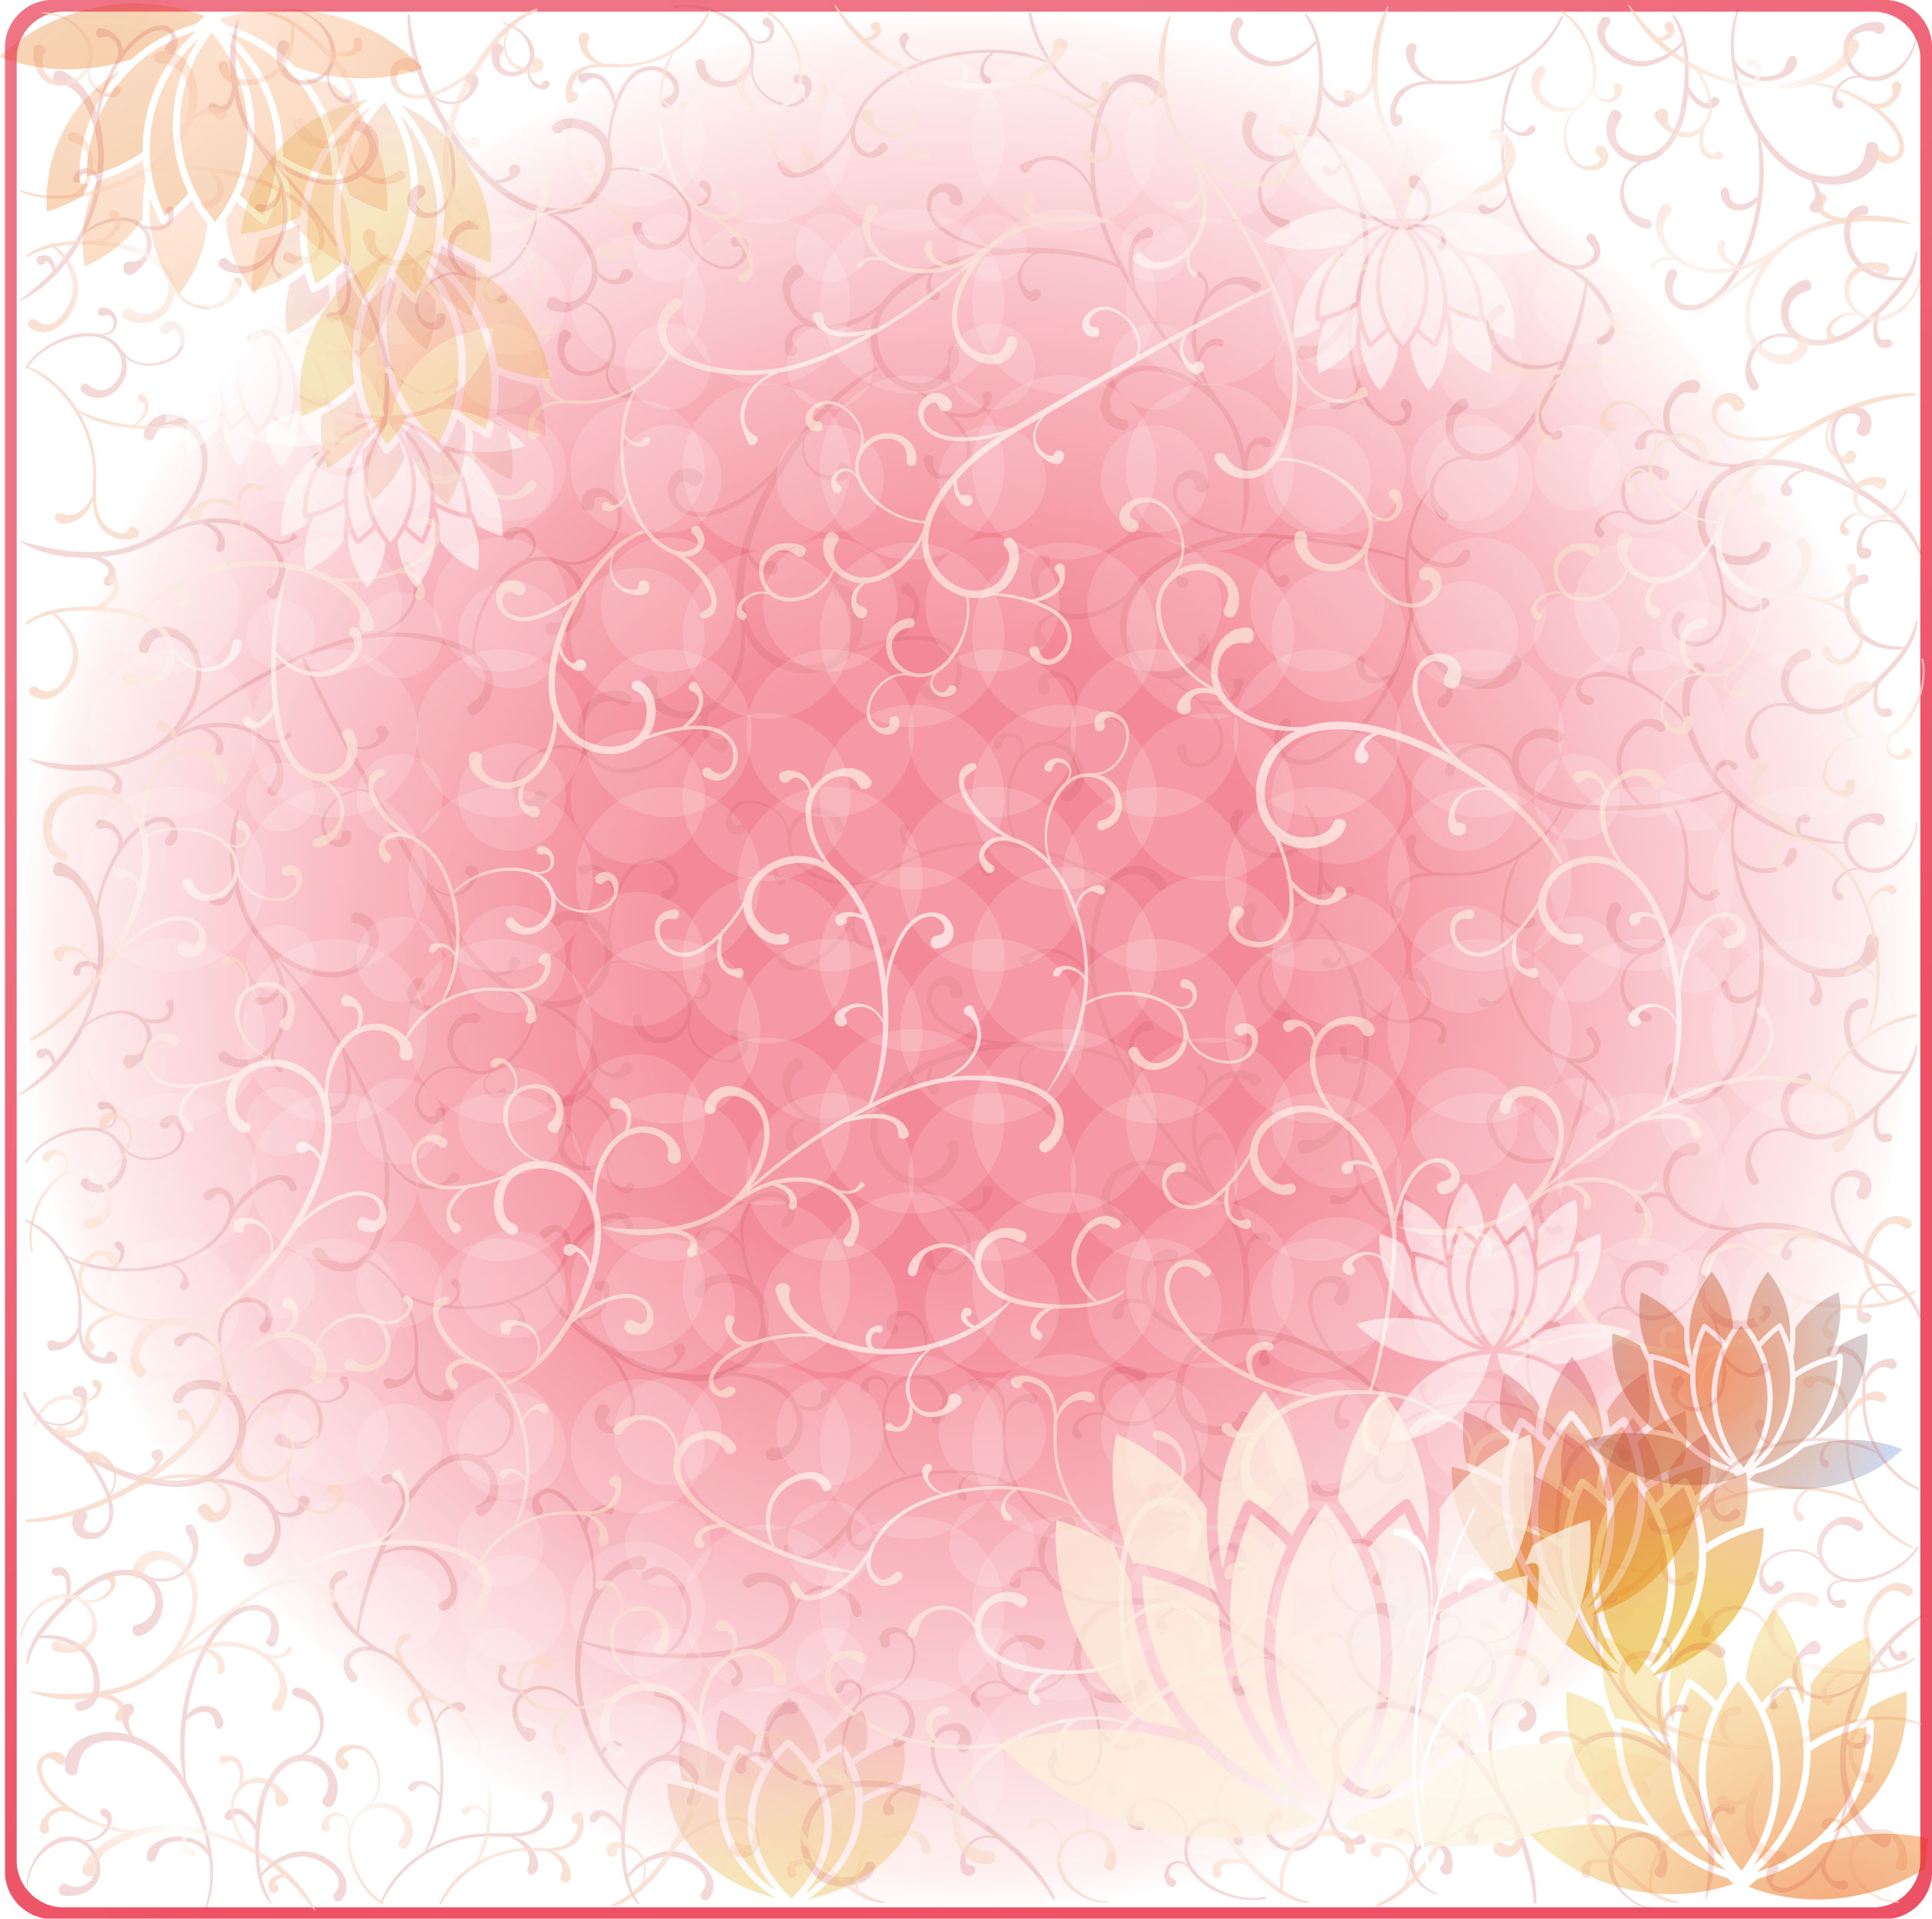 蓮 はす 睡蓮 すいれん の花のイラスト 画像 無料のフリー素材集